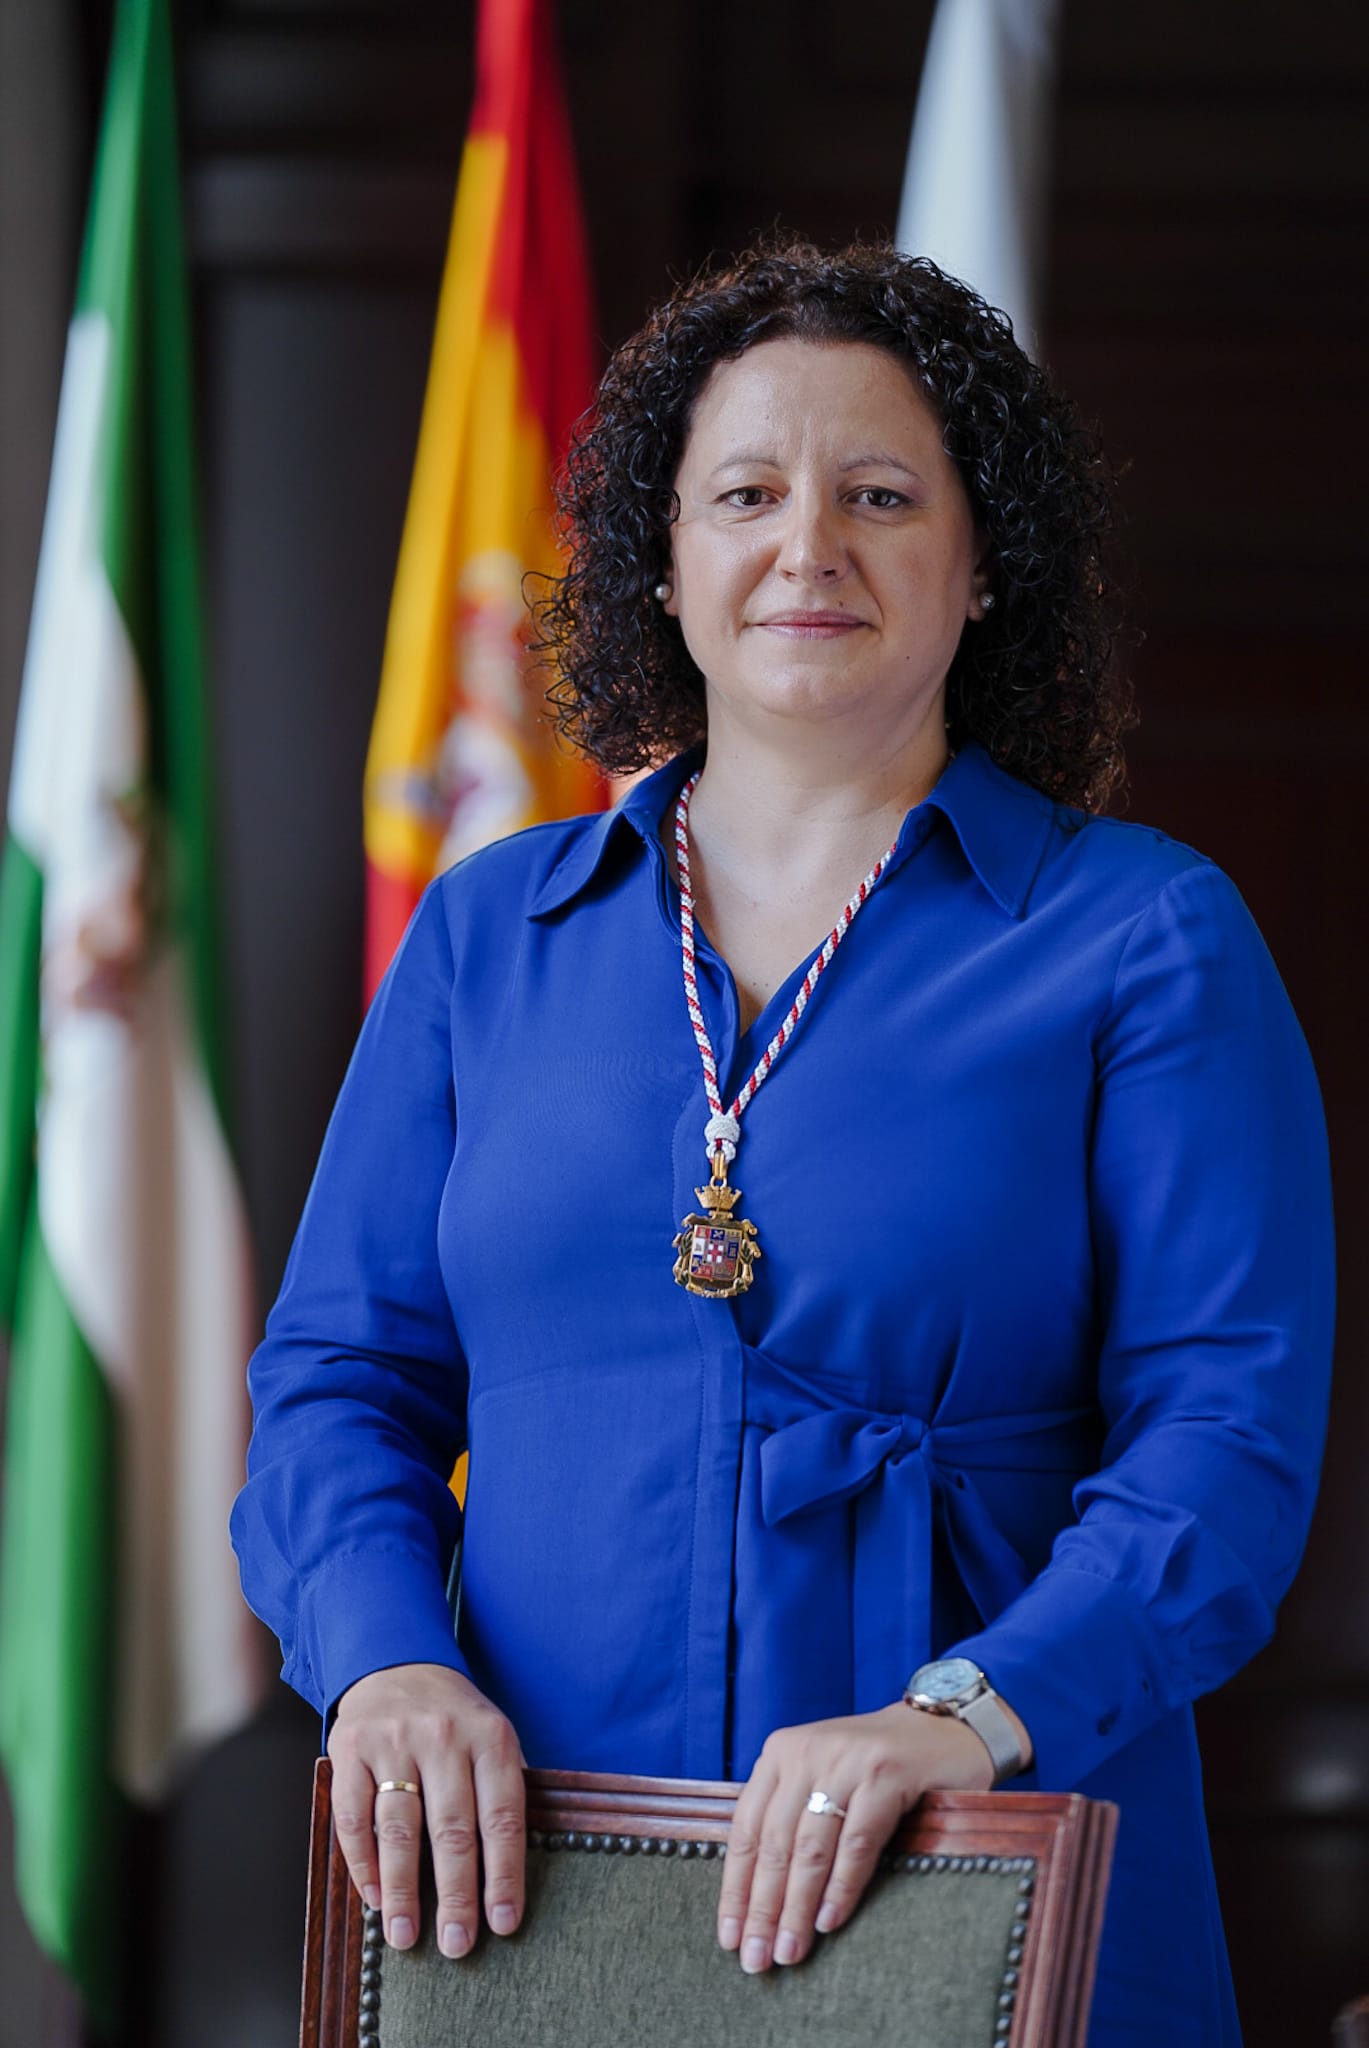 Nuria Rodríguez Martín